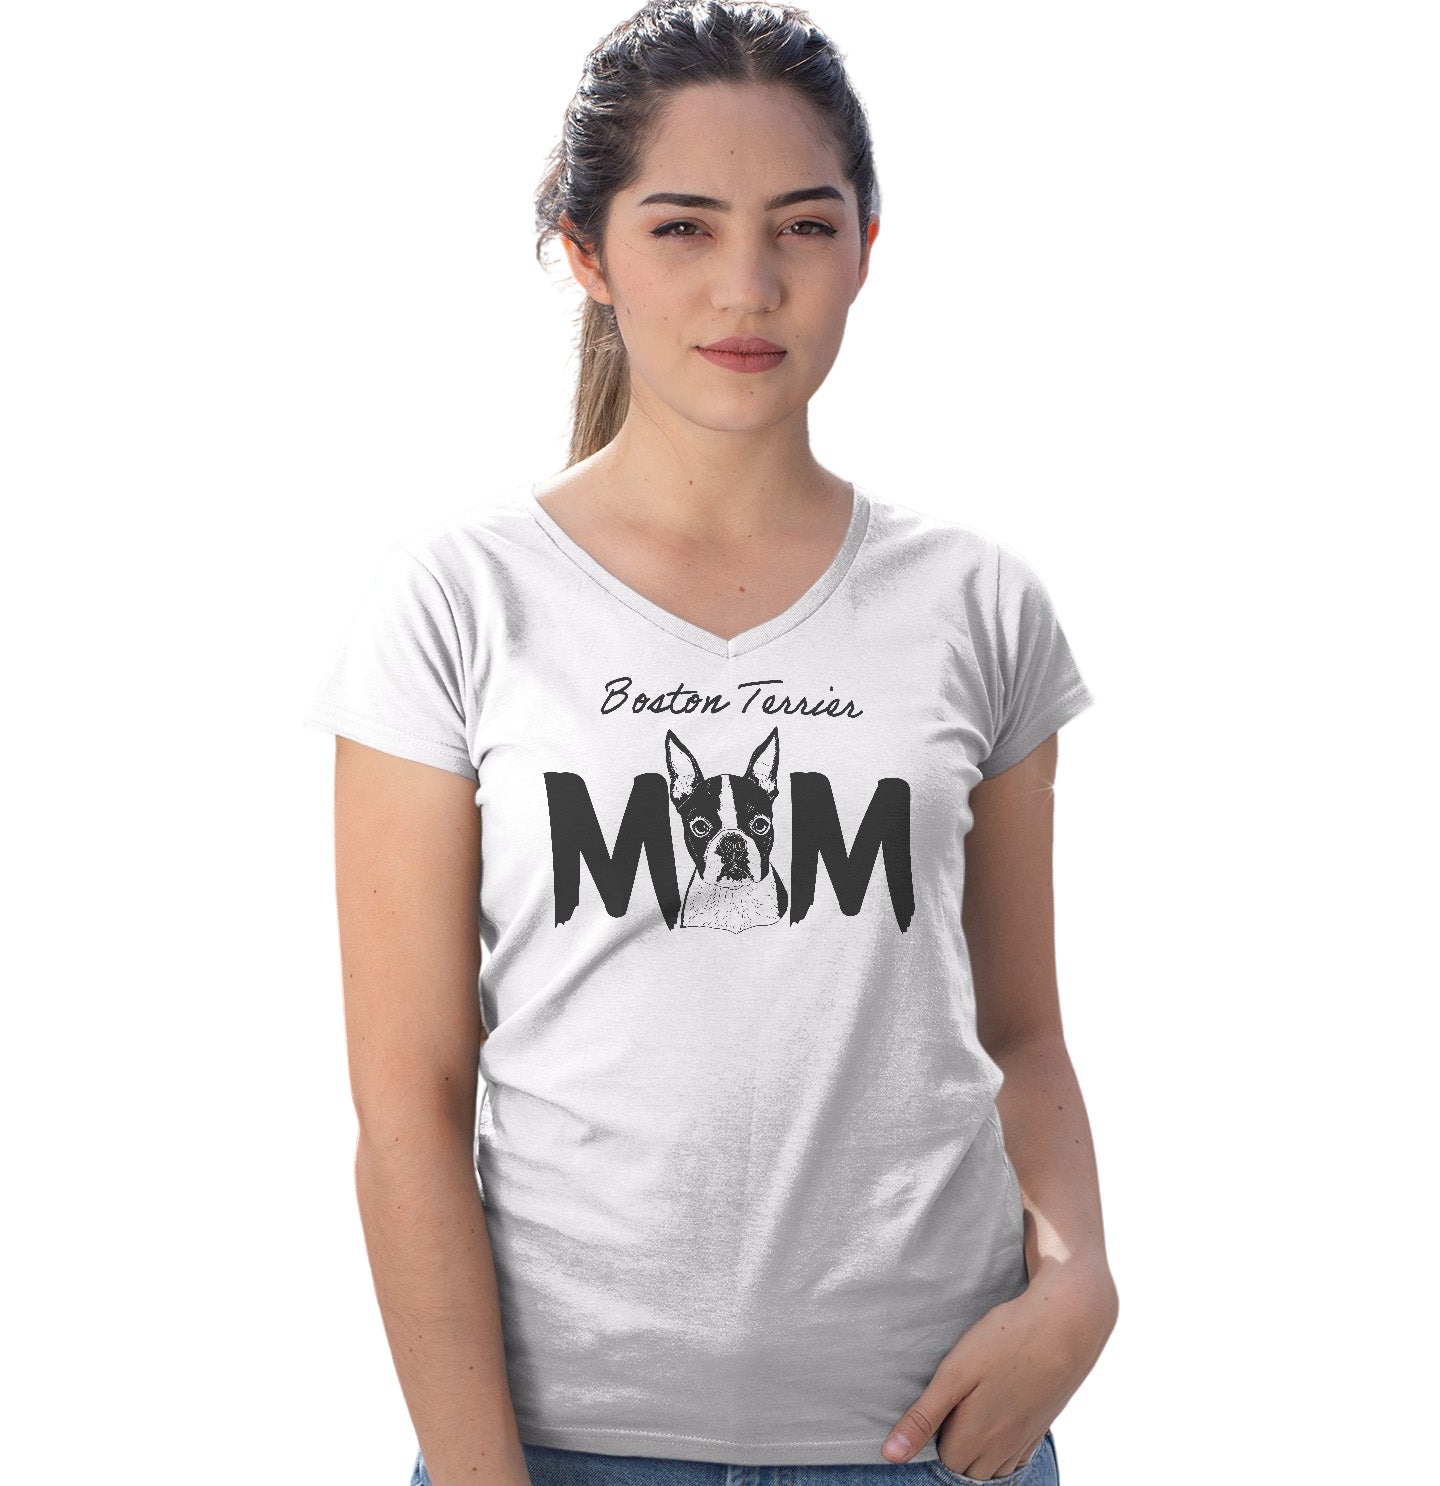 Boston Terrier Breed Mom - Women's V-Neck T-Shirt